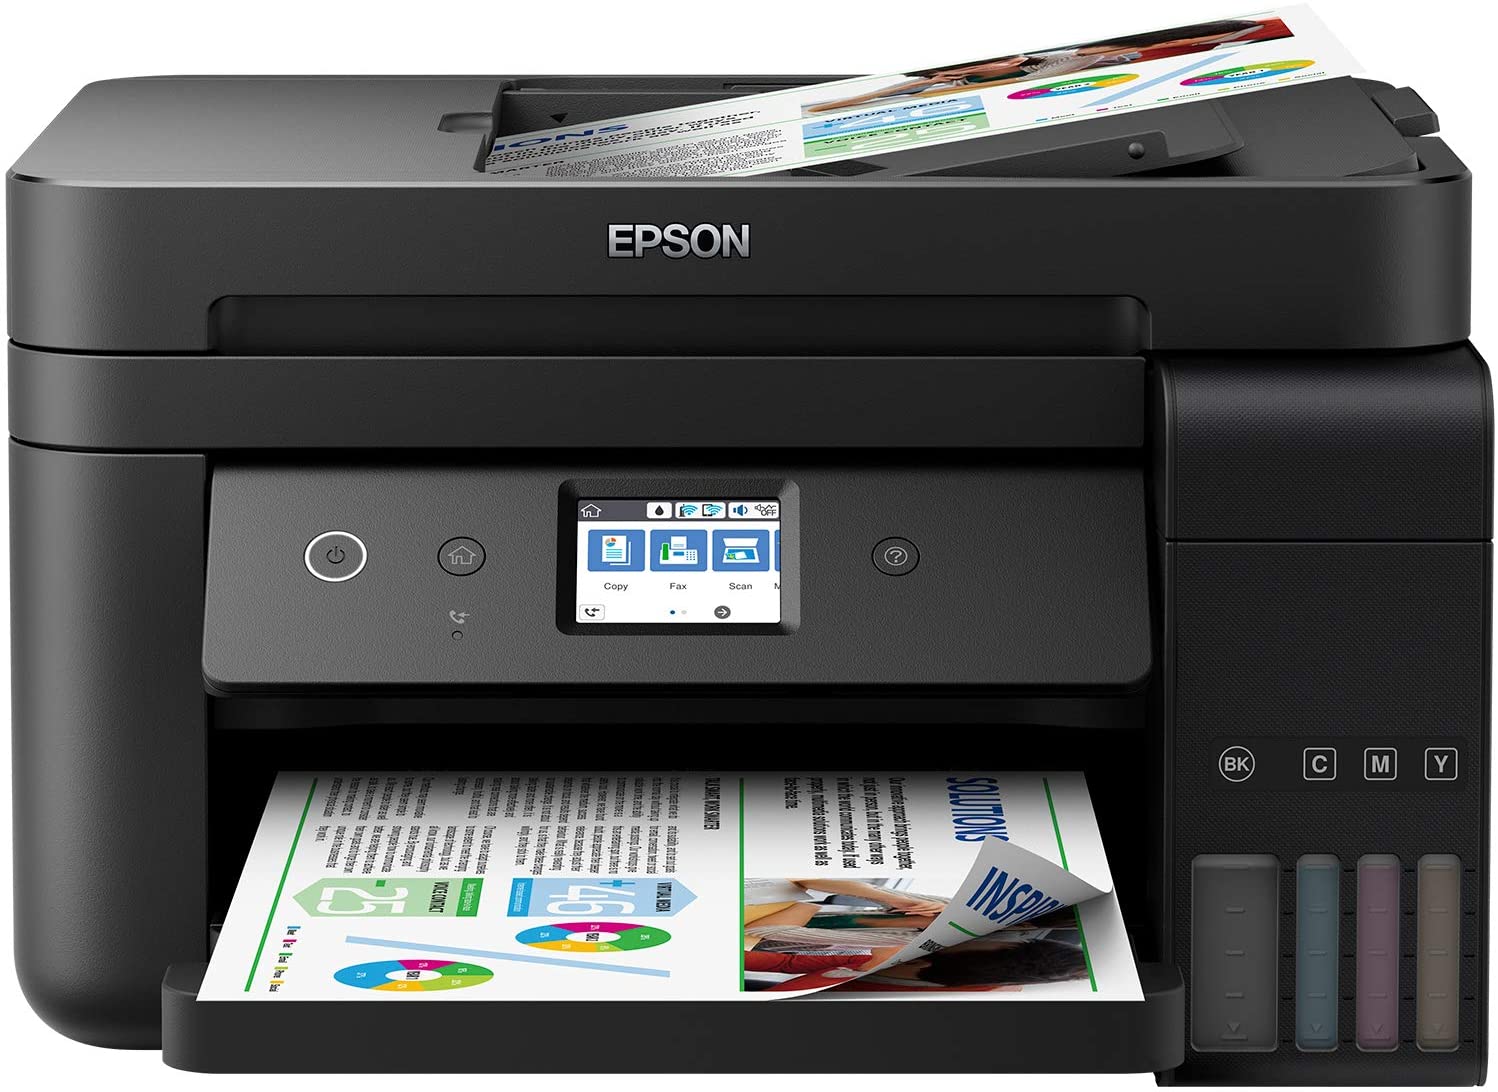 Epson Imprimante EcoTank ET-4750 avec réservoirs, Multifonction 4-en-1